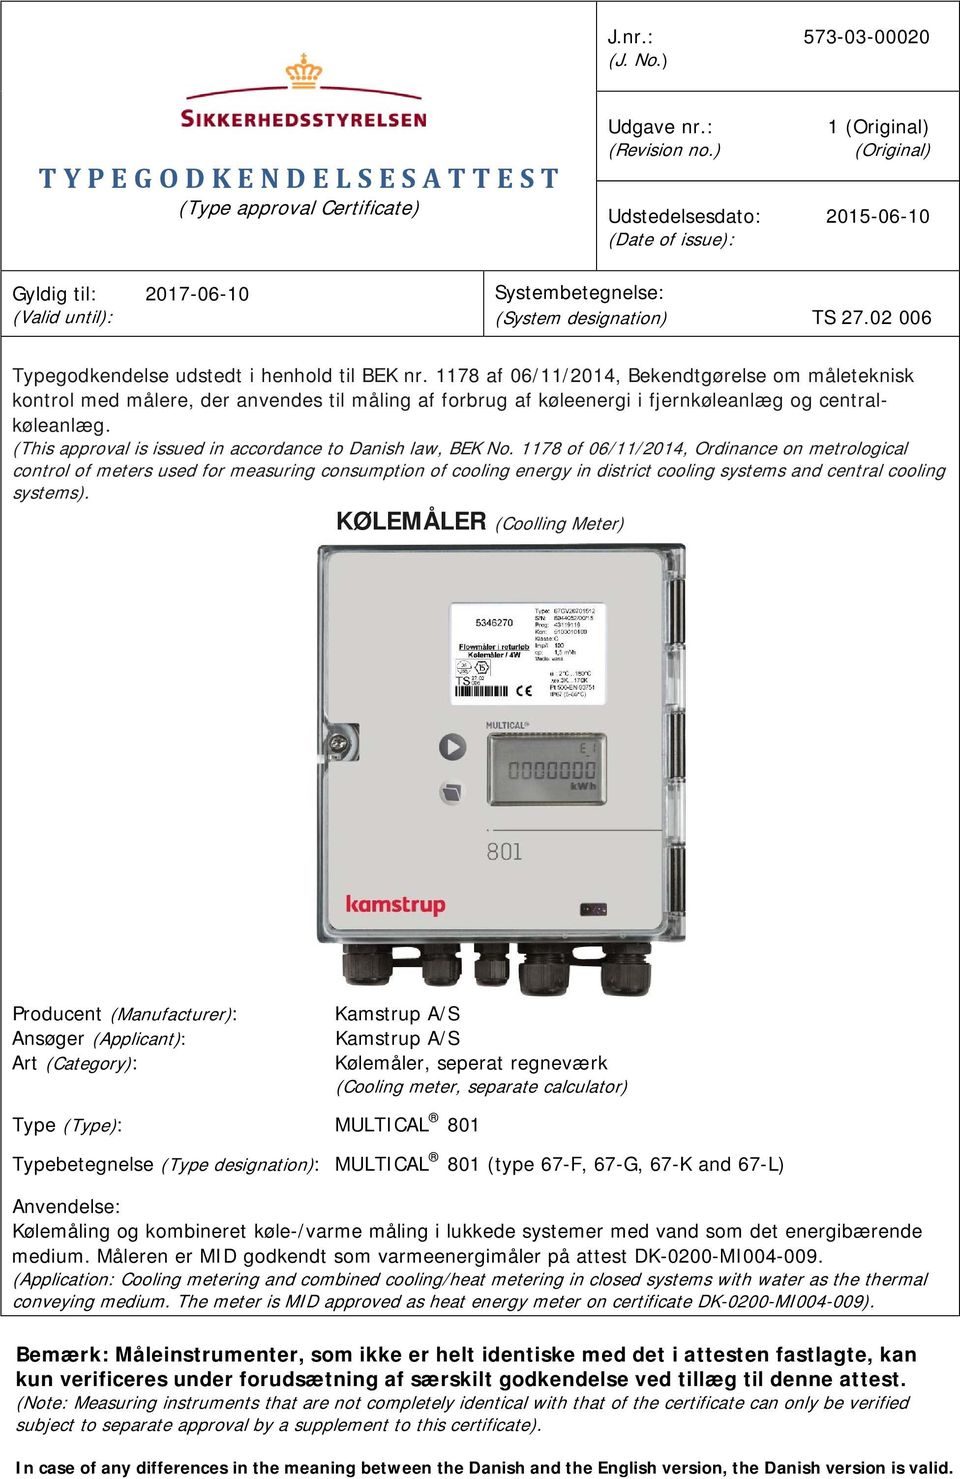 1178 af 06/11/2014, Bekendtgørelse om måleteknisk kontrol med målere, der anvendes til måling af forbrug af køleenergi i fjernkøleanlæg og centralkøleanlæg.